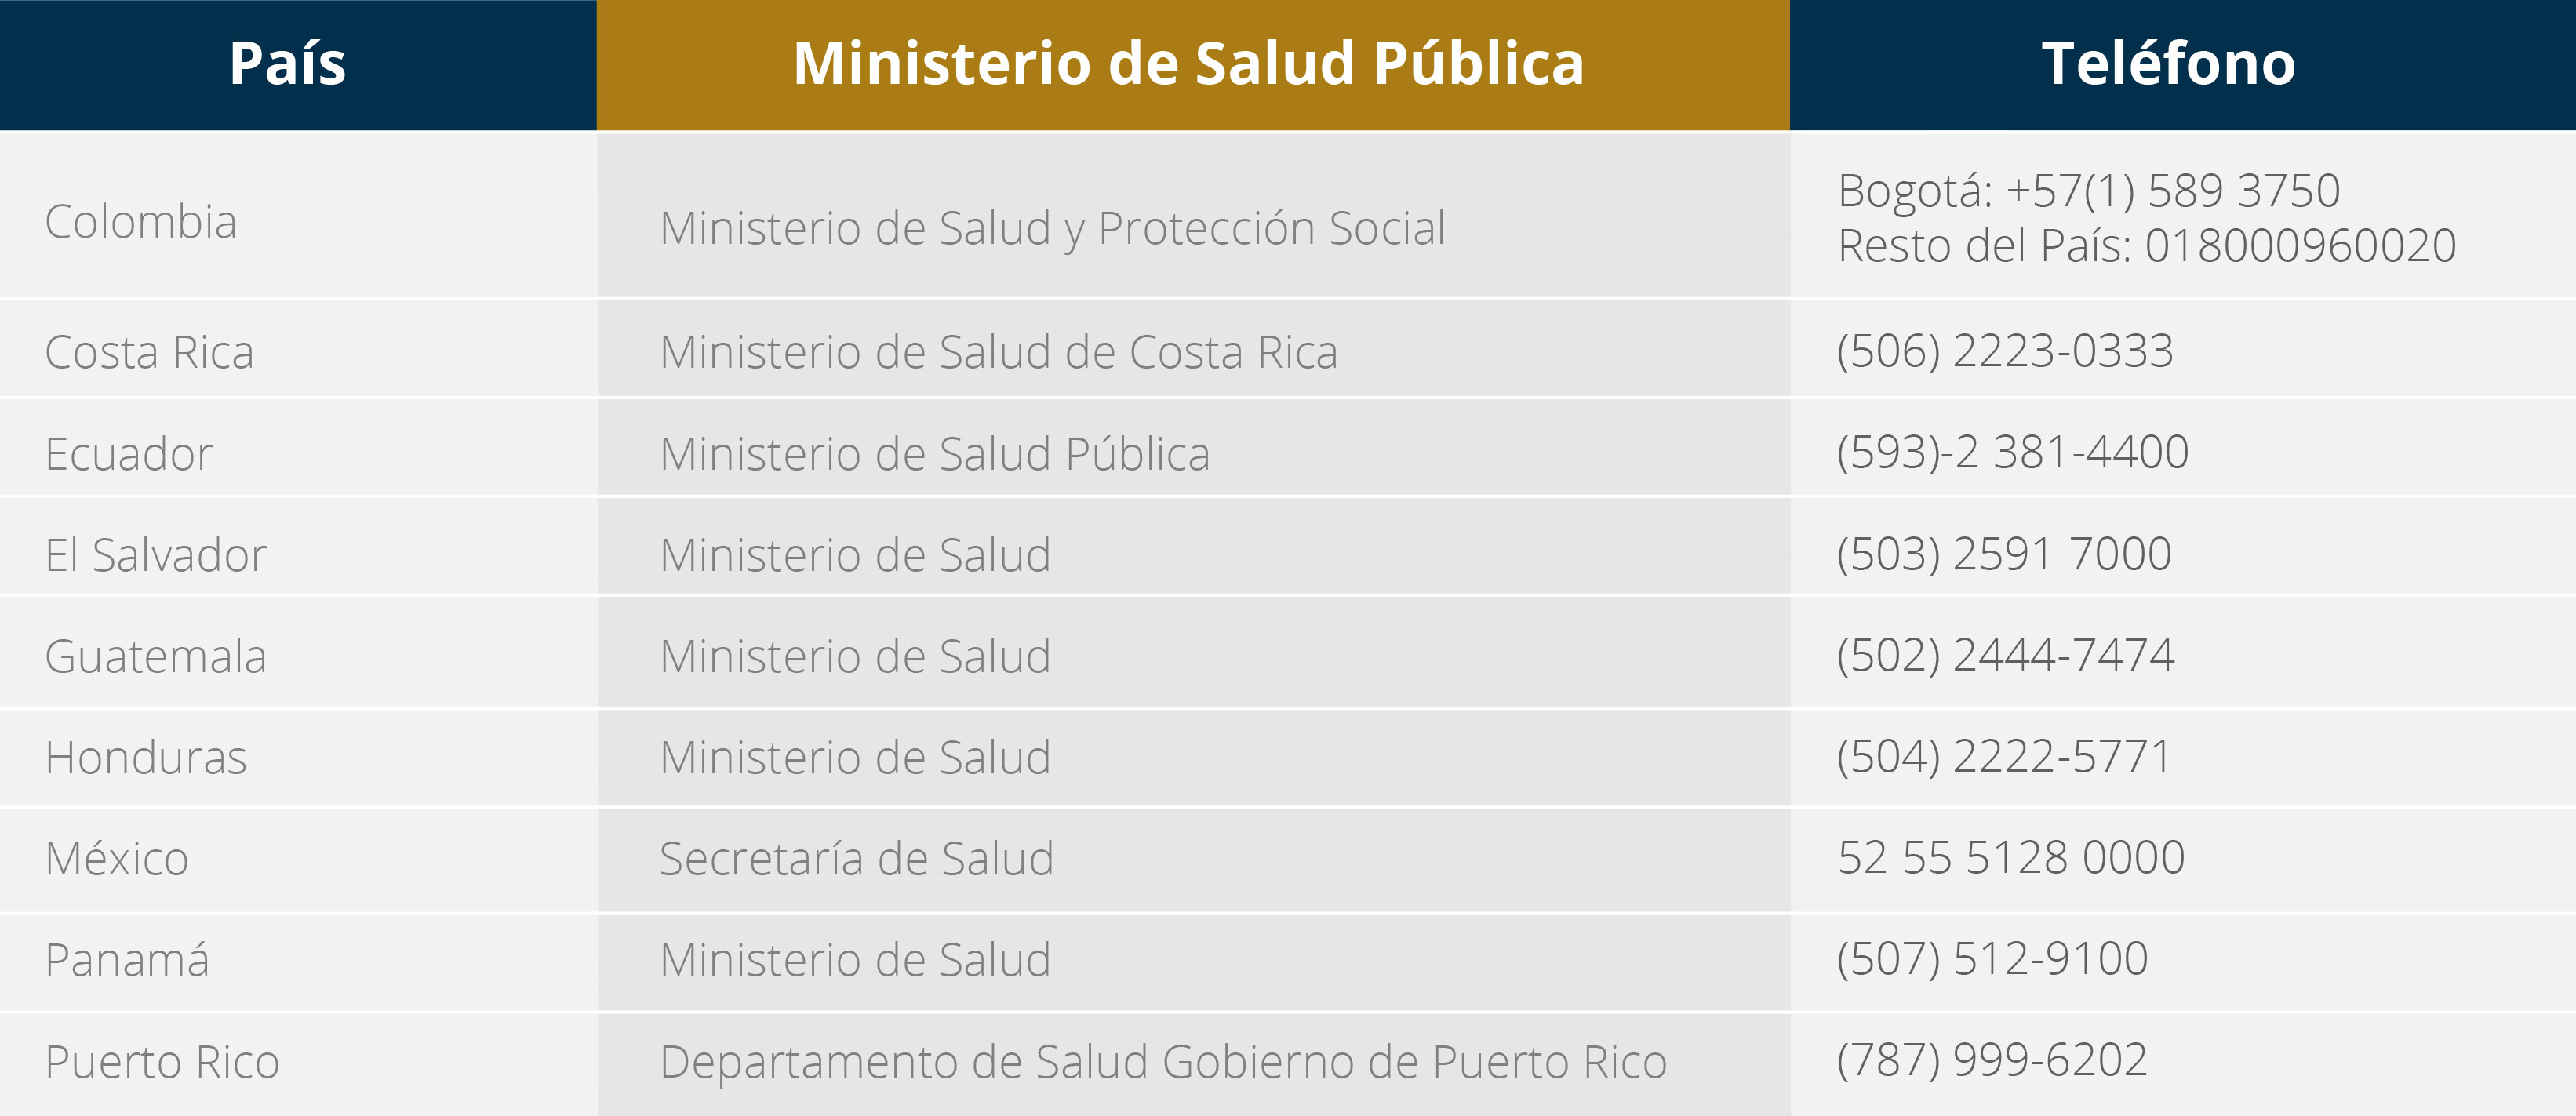 Ministerios de Salud de Latinoamerica por país y su respectivo teléfono de contacto